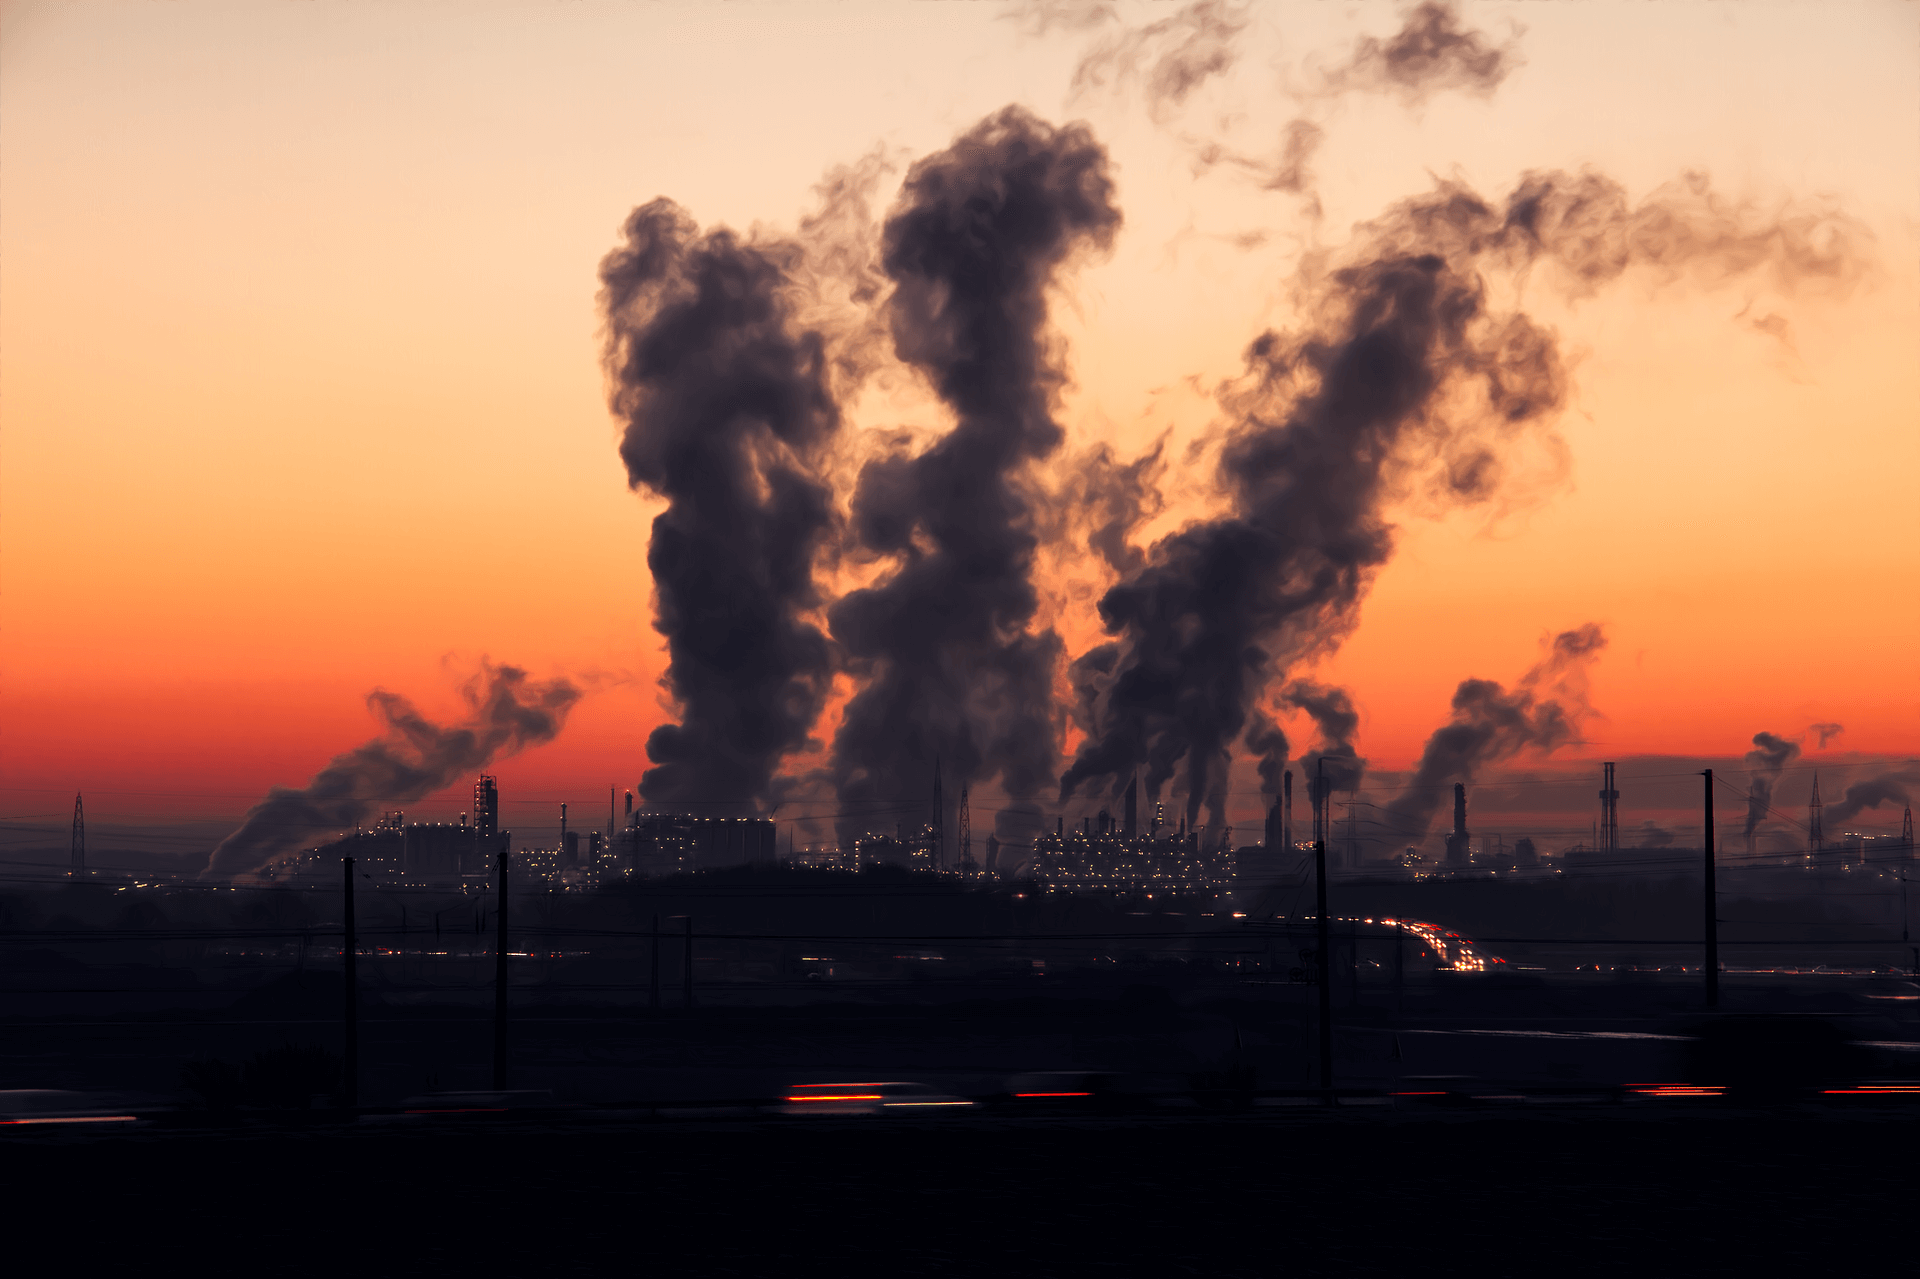 зображення промислового забруднення